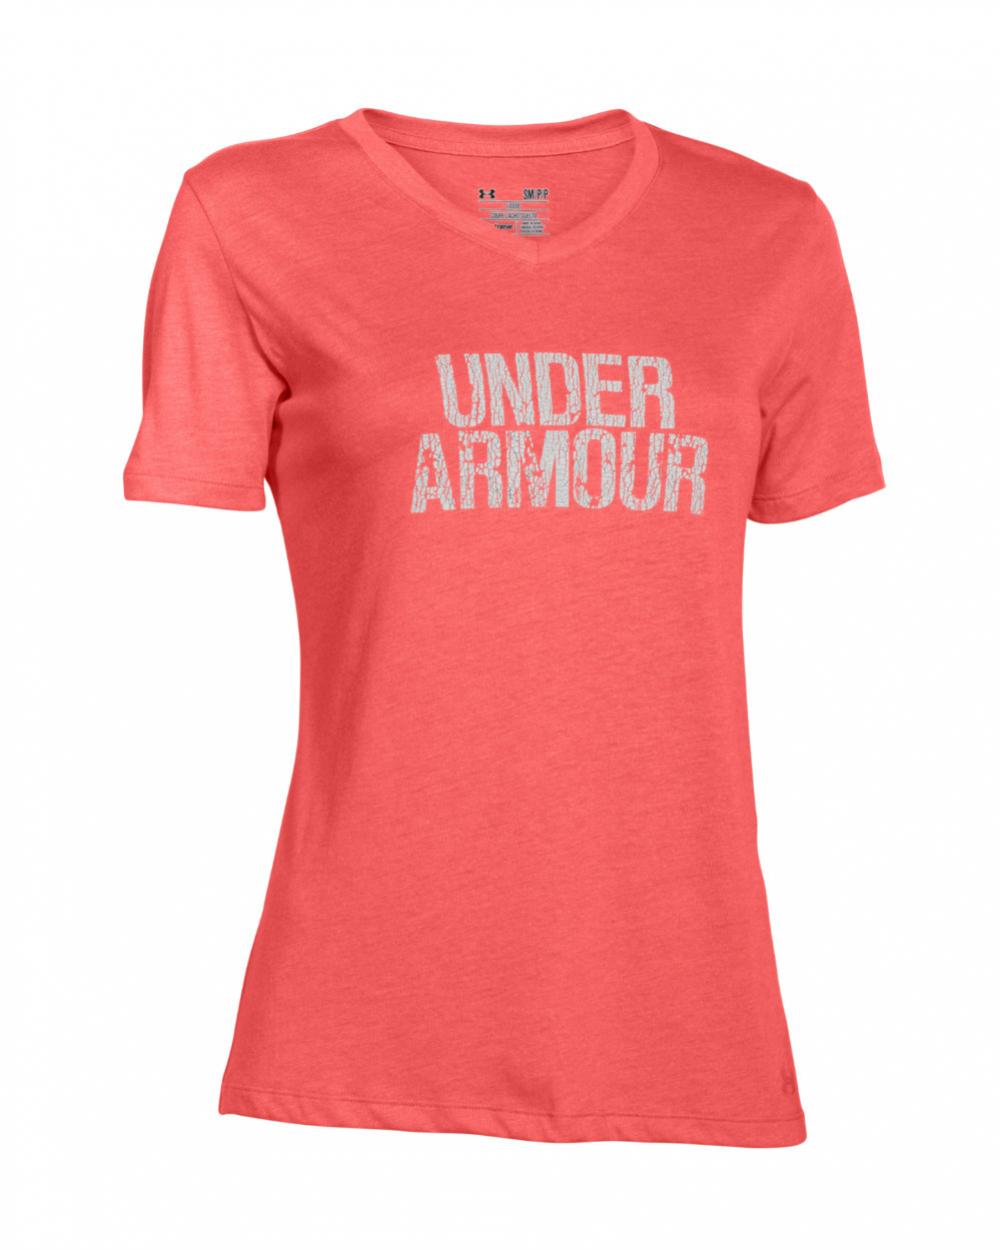 UA Wordmark Women’s Graphic T-Shirt1259477-811